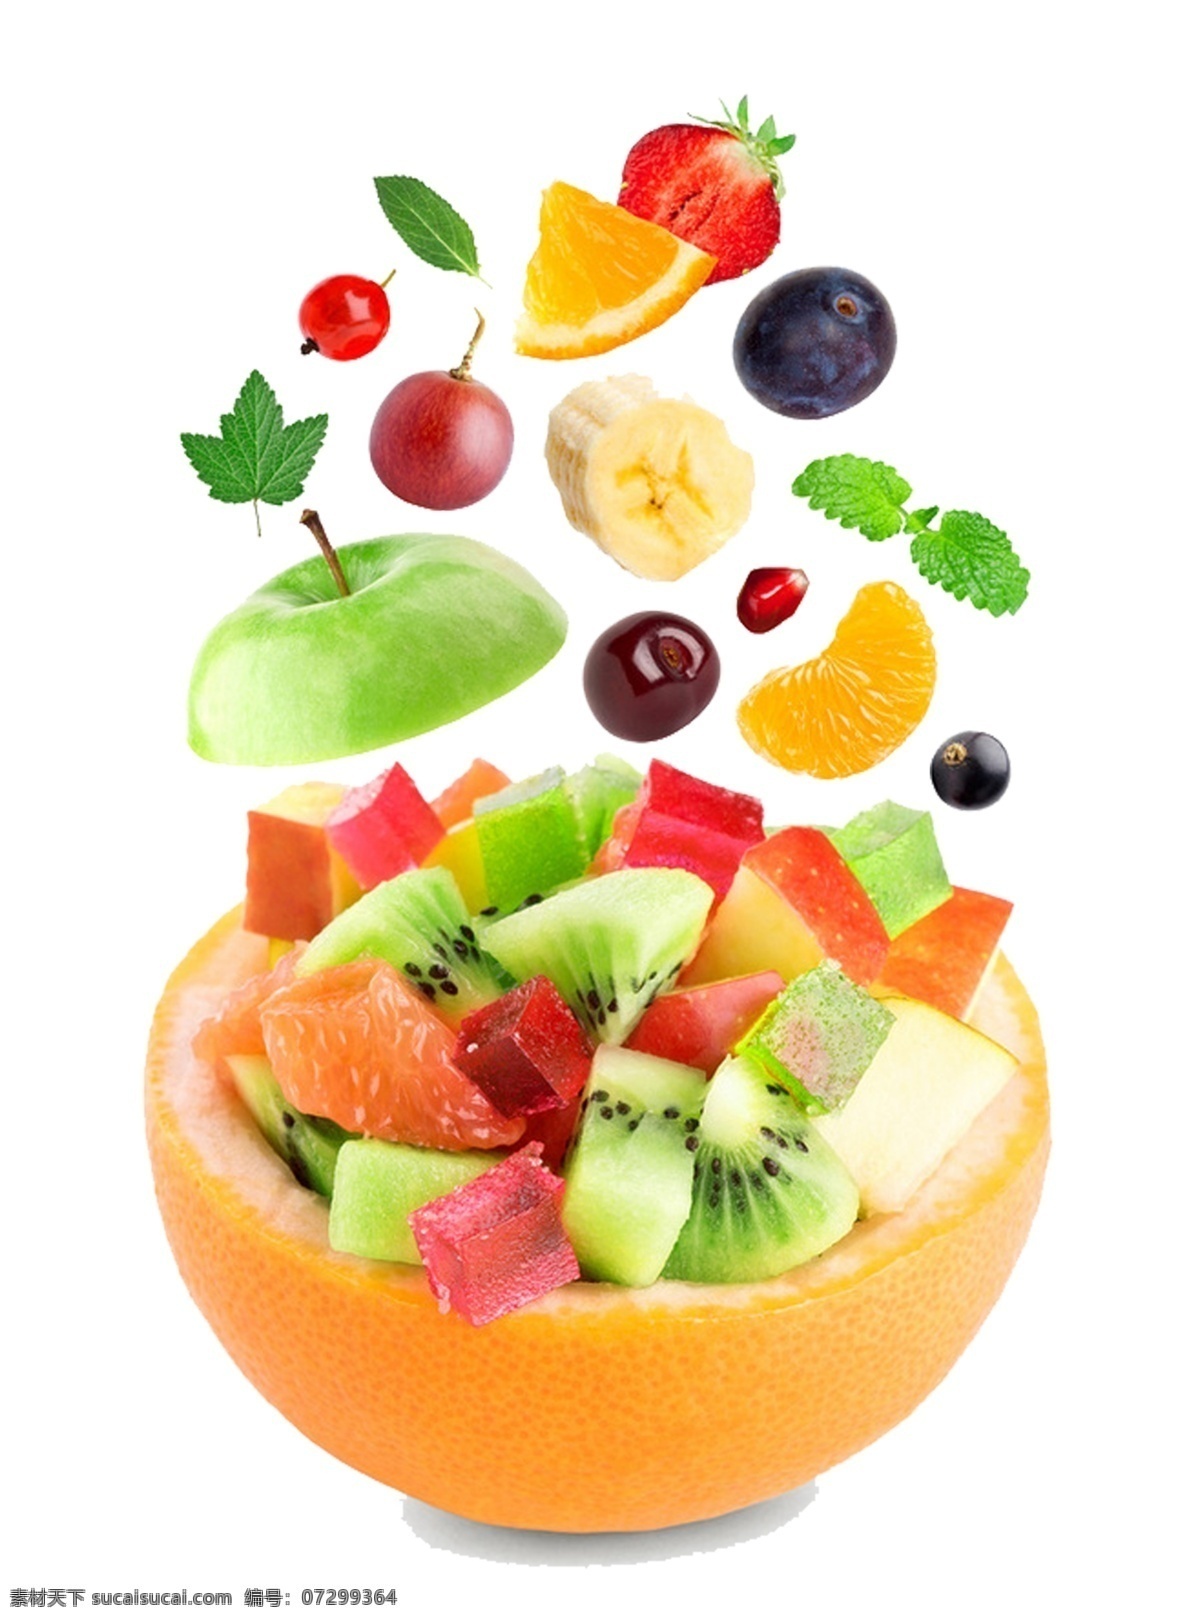 丰富水果元素 丰富 拼盘 橙子 水果拼盘 水果元素 水果